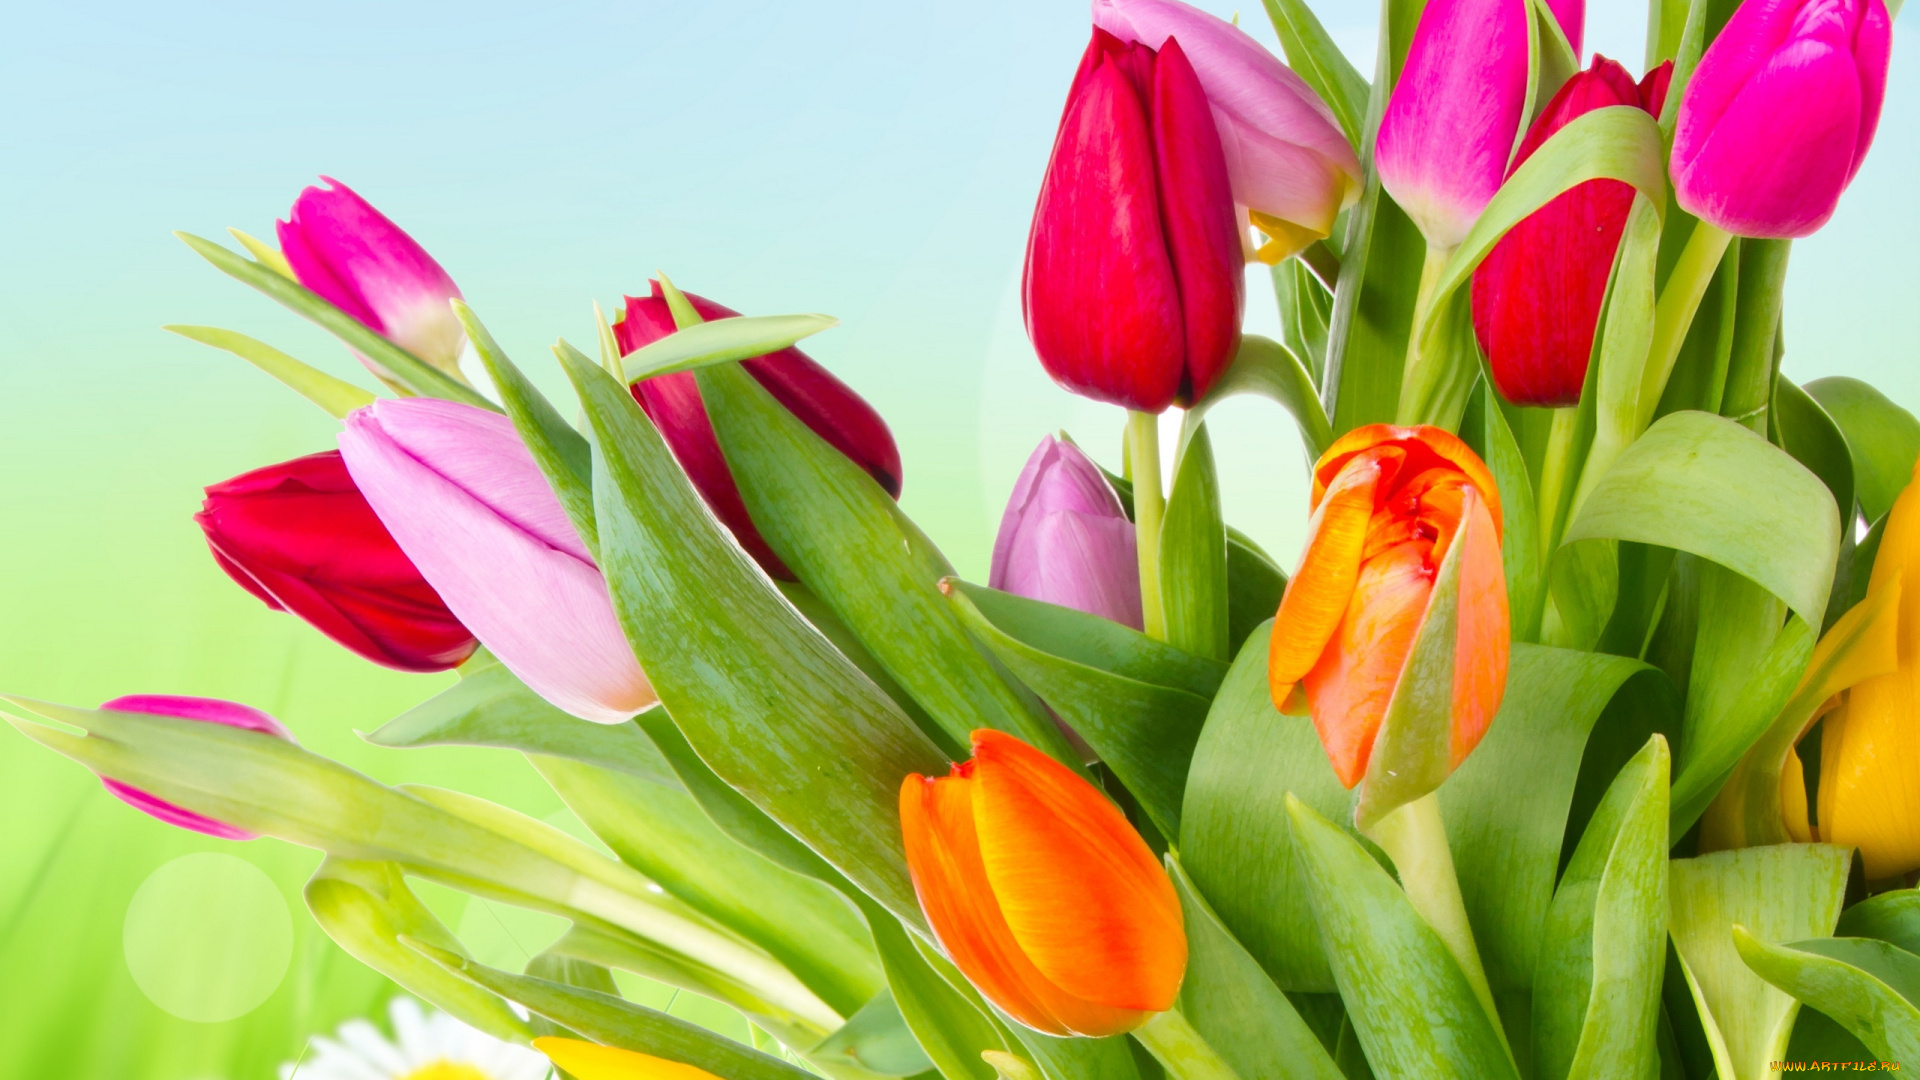 цветы, тюльпаны, orange, yellow, tulips, лепестки, розовые, красные, petals, оранжевые, разноцветные, жёлтые, pink, red, яркие, beauty, flowers, varicoloured, bright